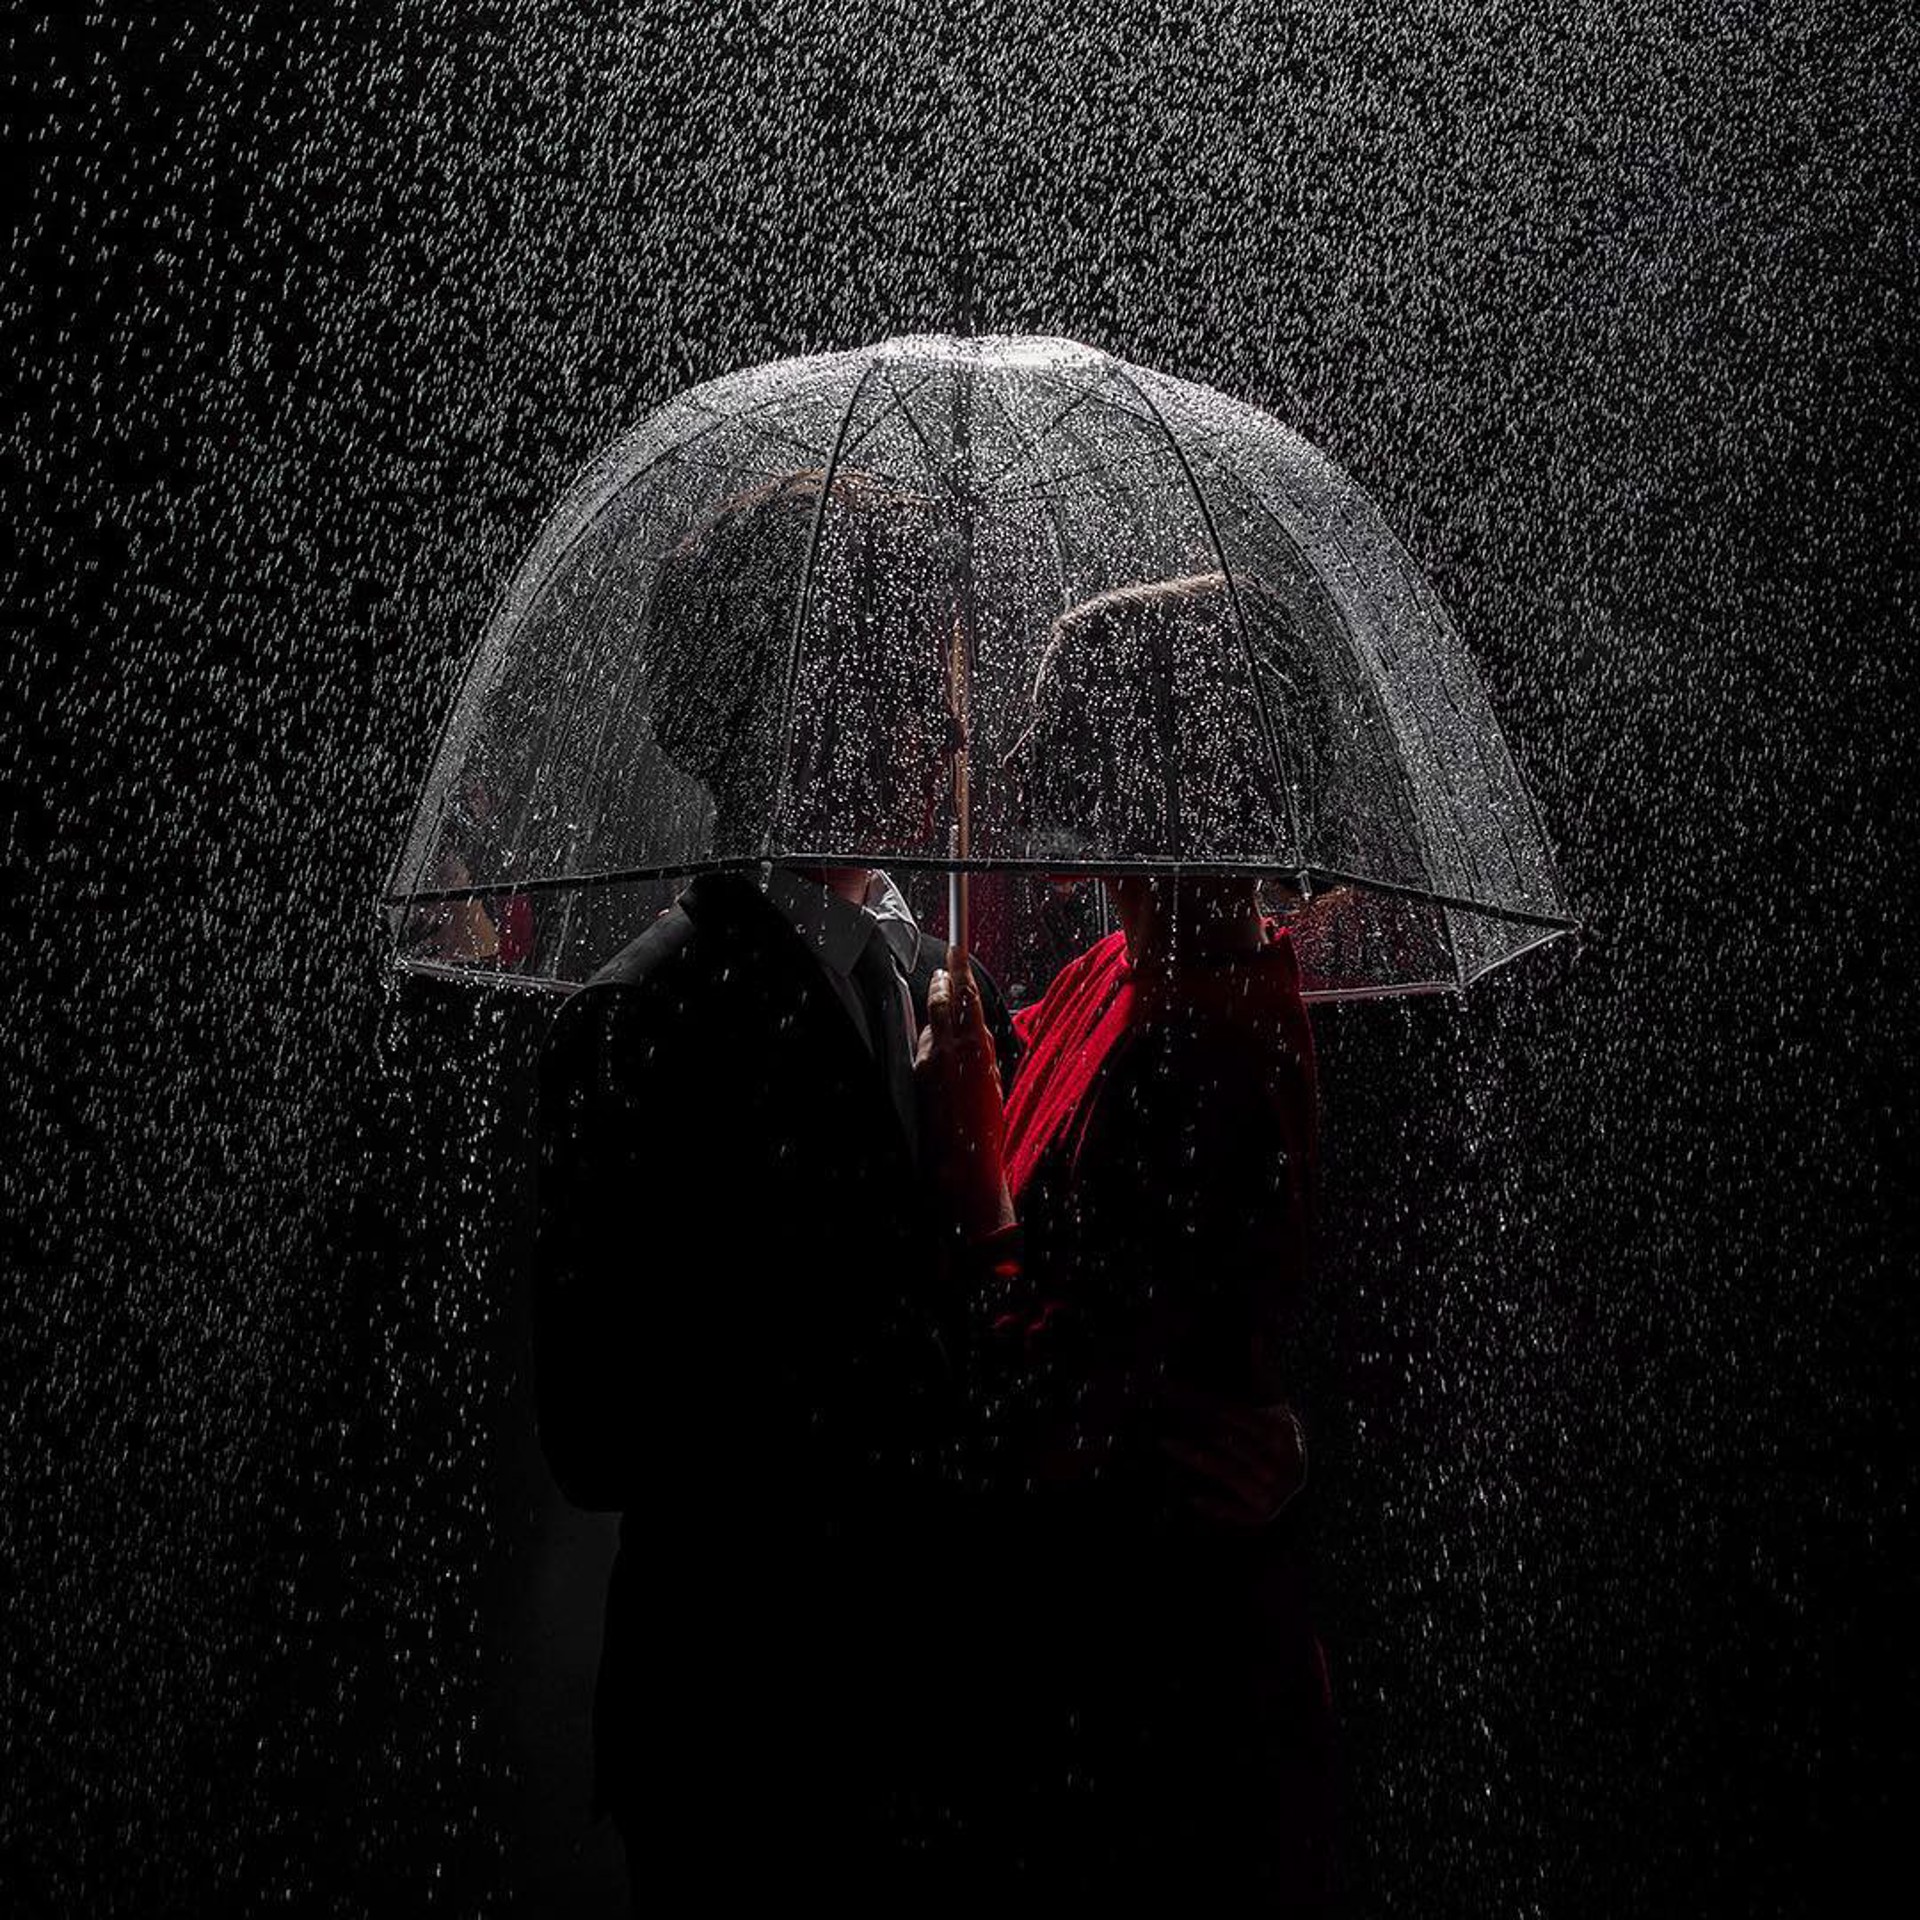 Under the Rain (AP1) by Tyler Shields